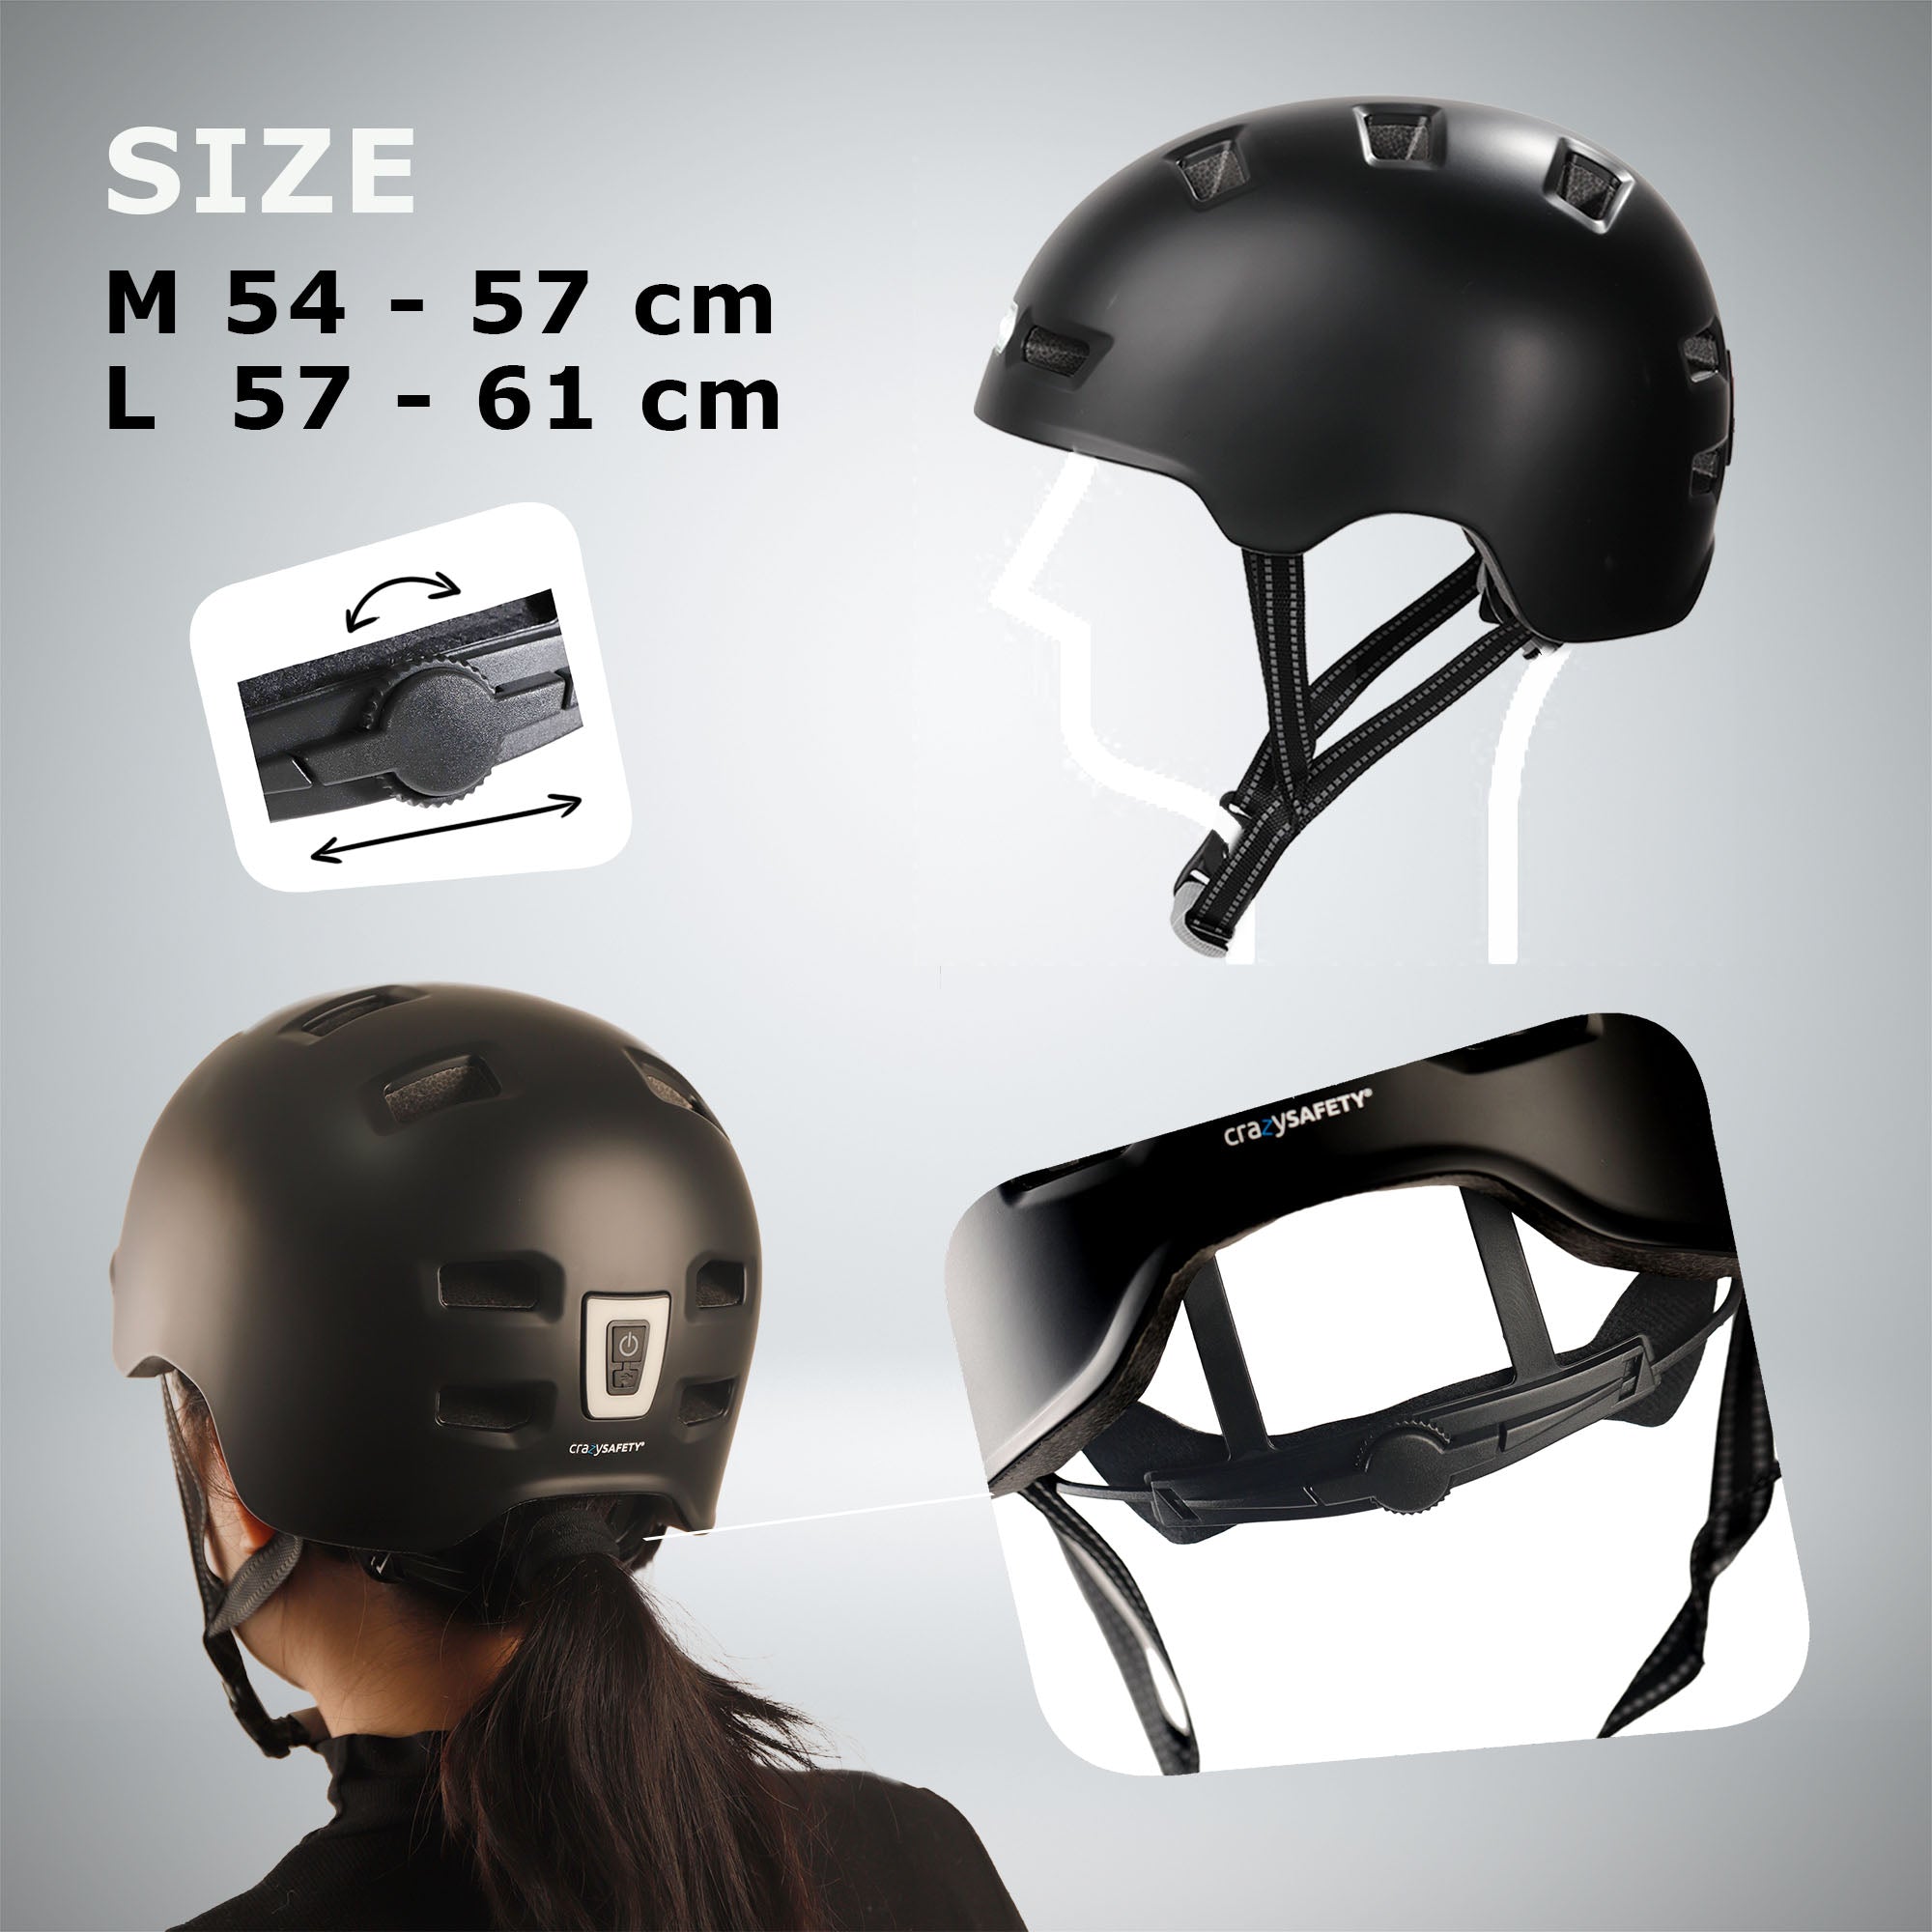 Vertigo Helm 